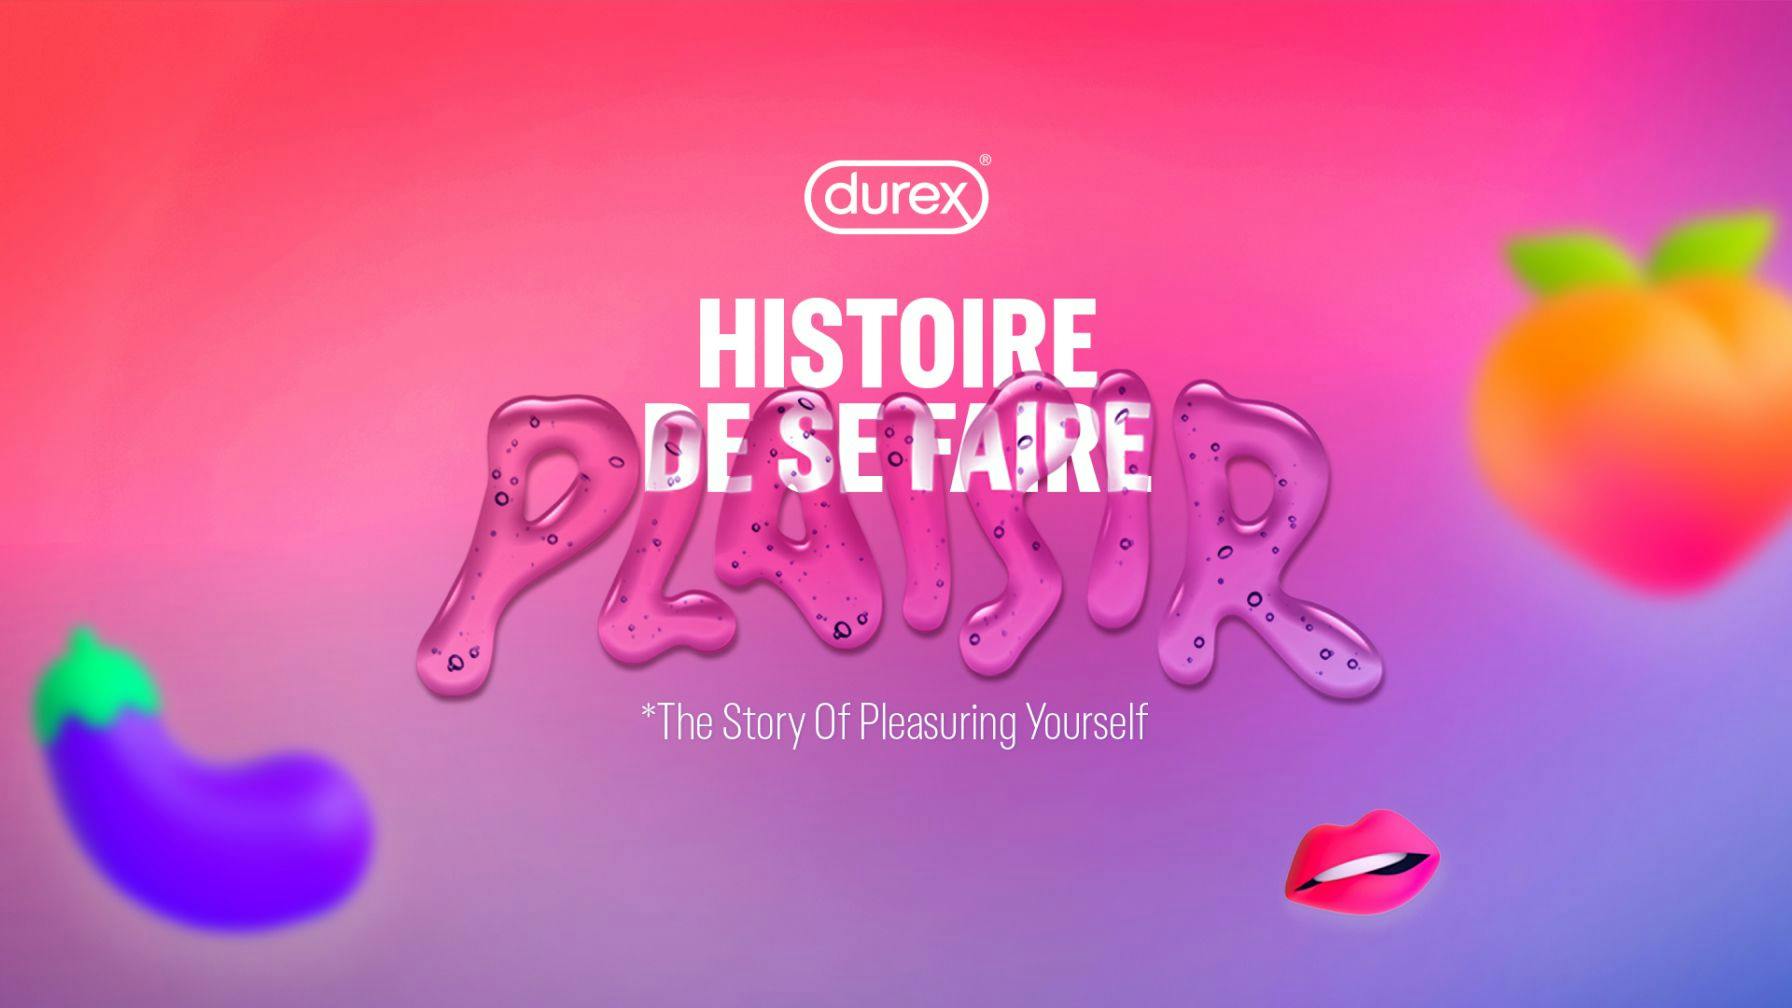 Durex's The Story Of Pleasuring Yourself